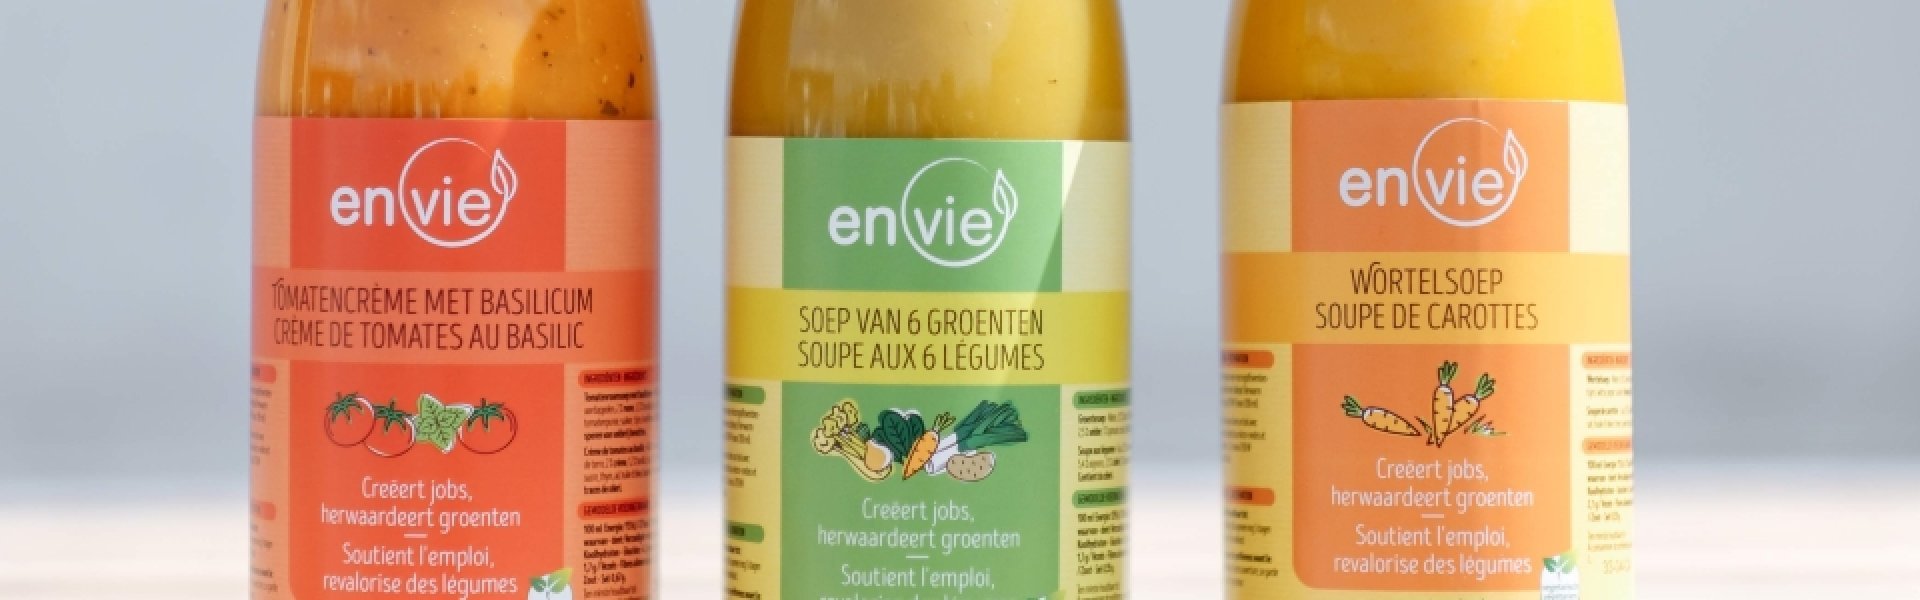 EnVie, soepbedrijf met een missie: zero waste en meer